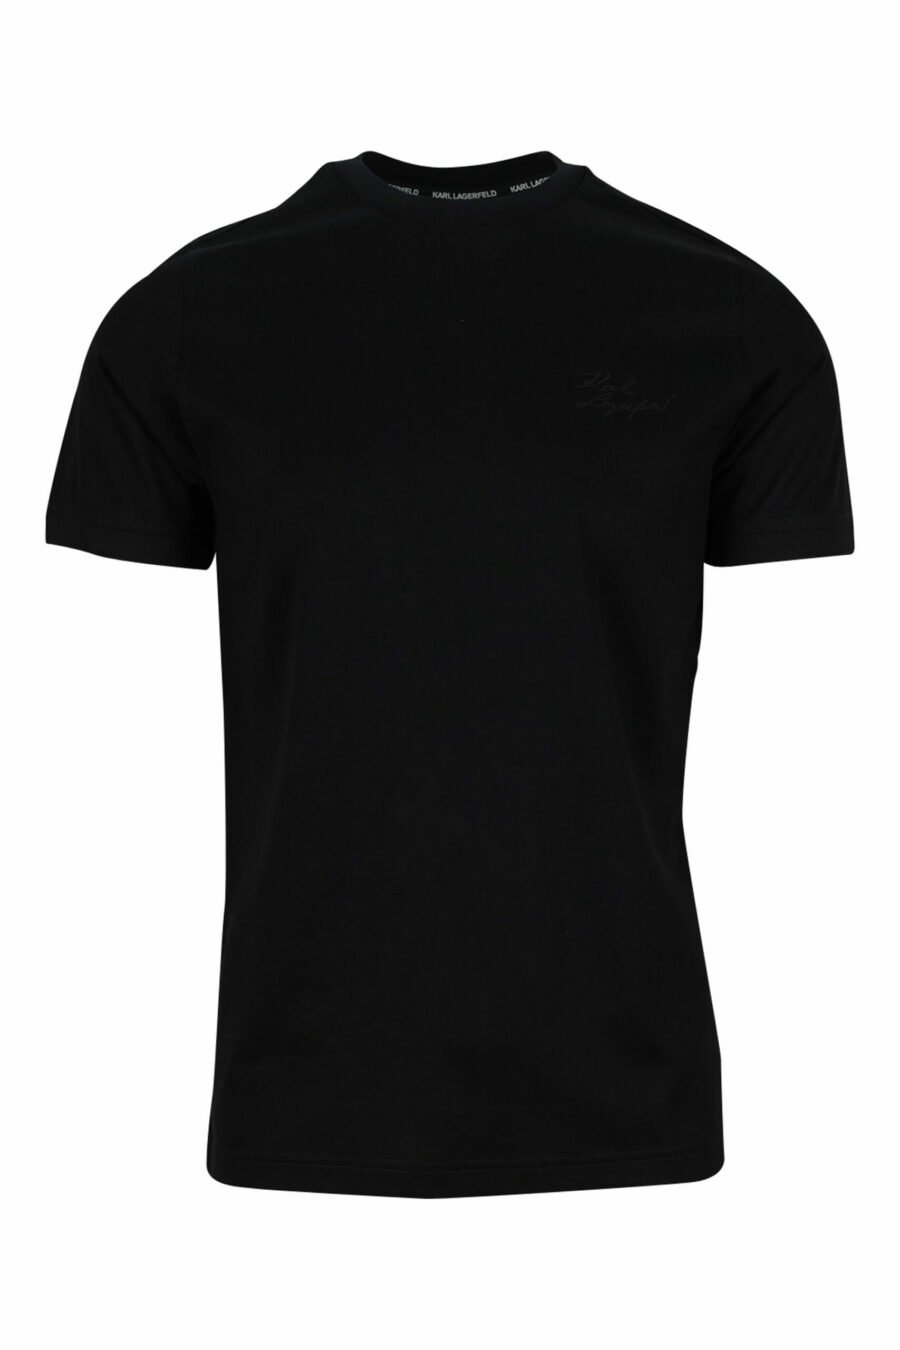 Tee-shirt noir avec minilogue noir - 4062226400473